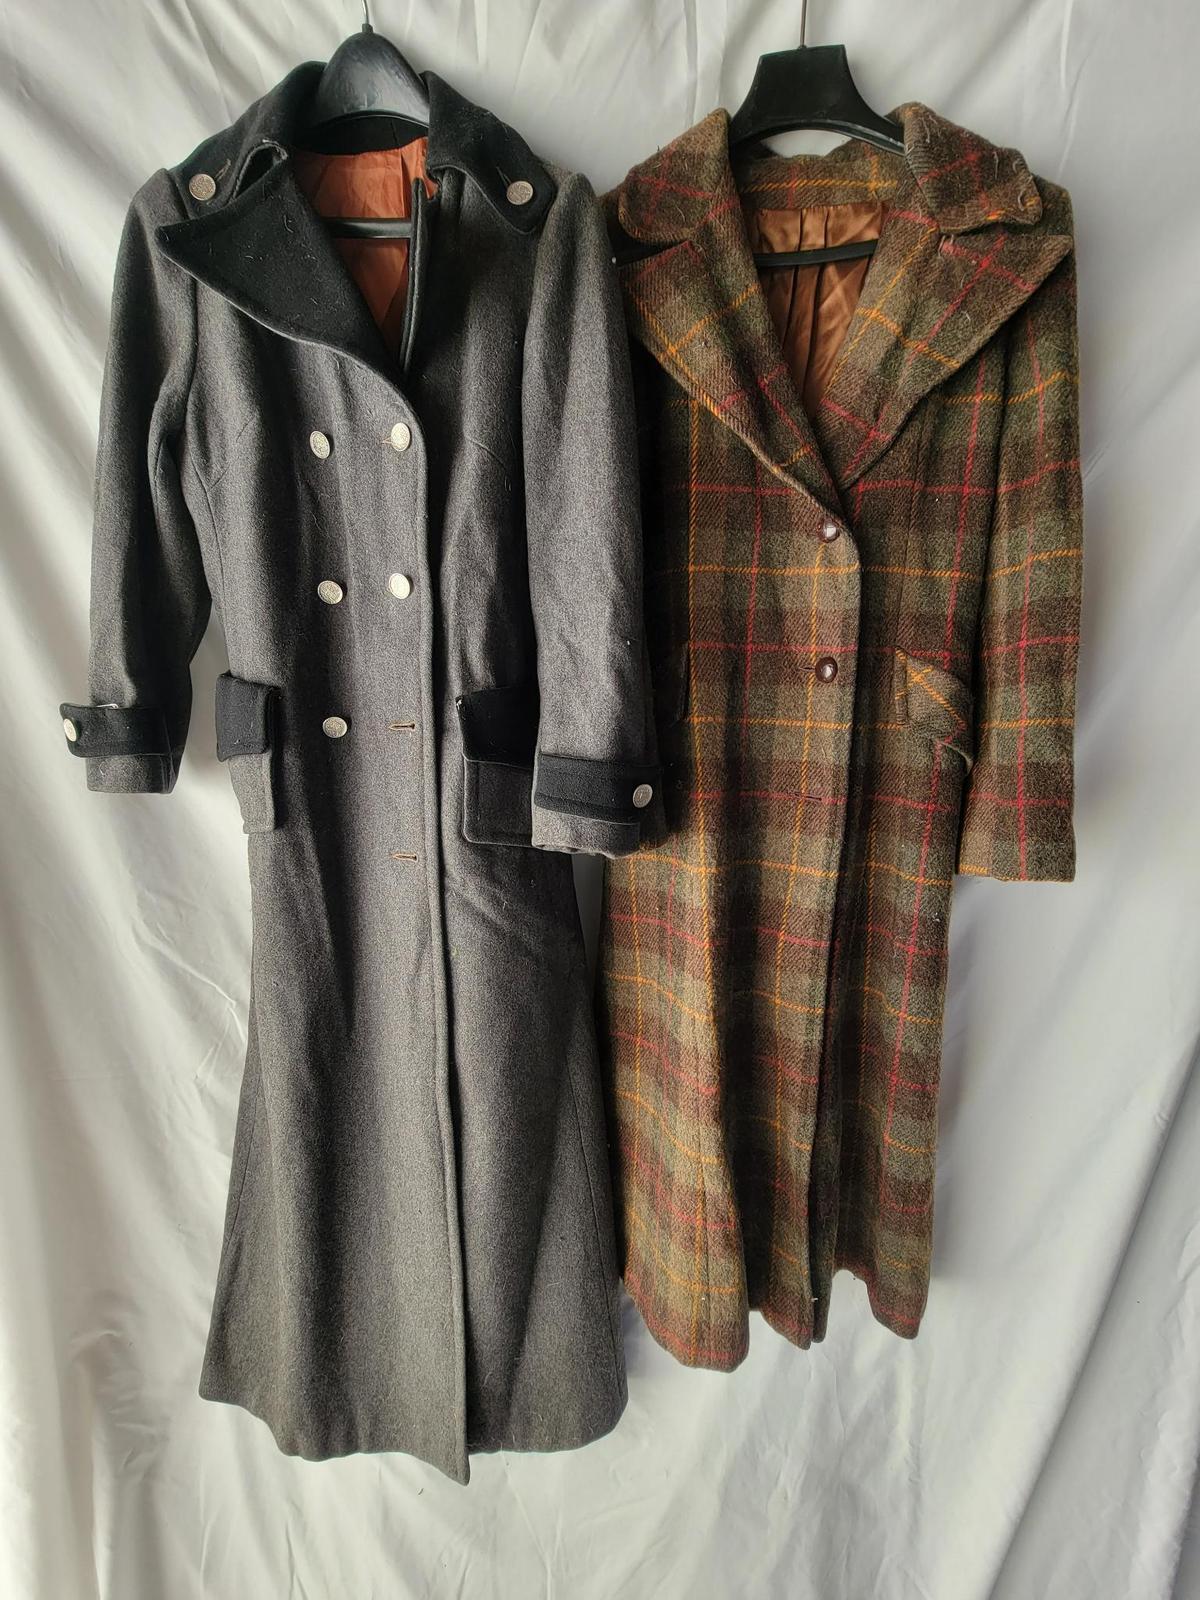 2 Coats